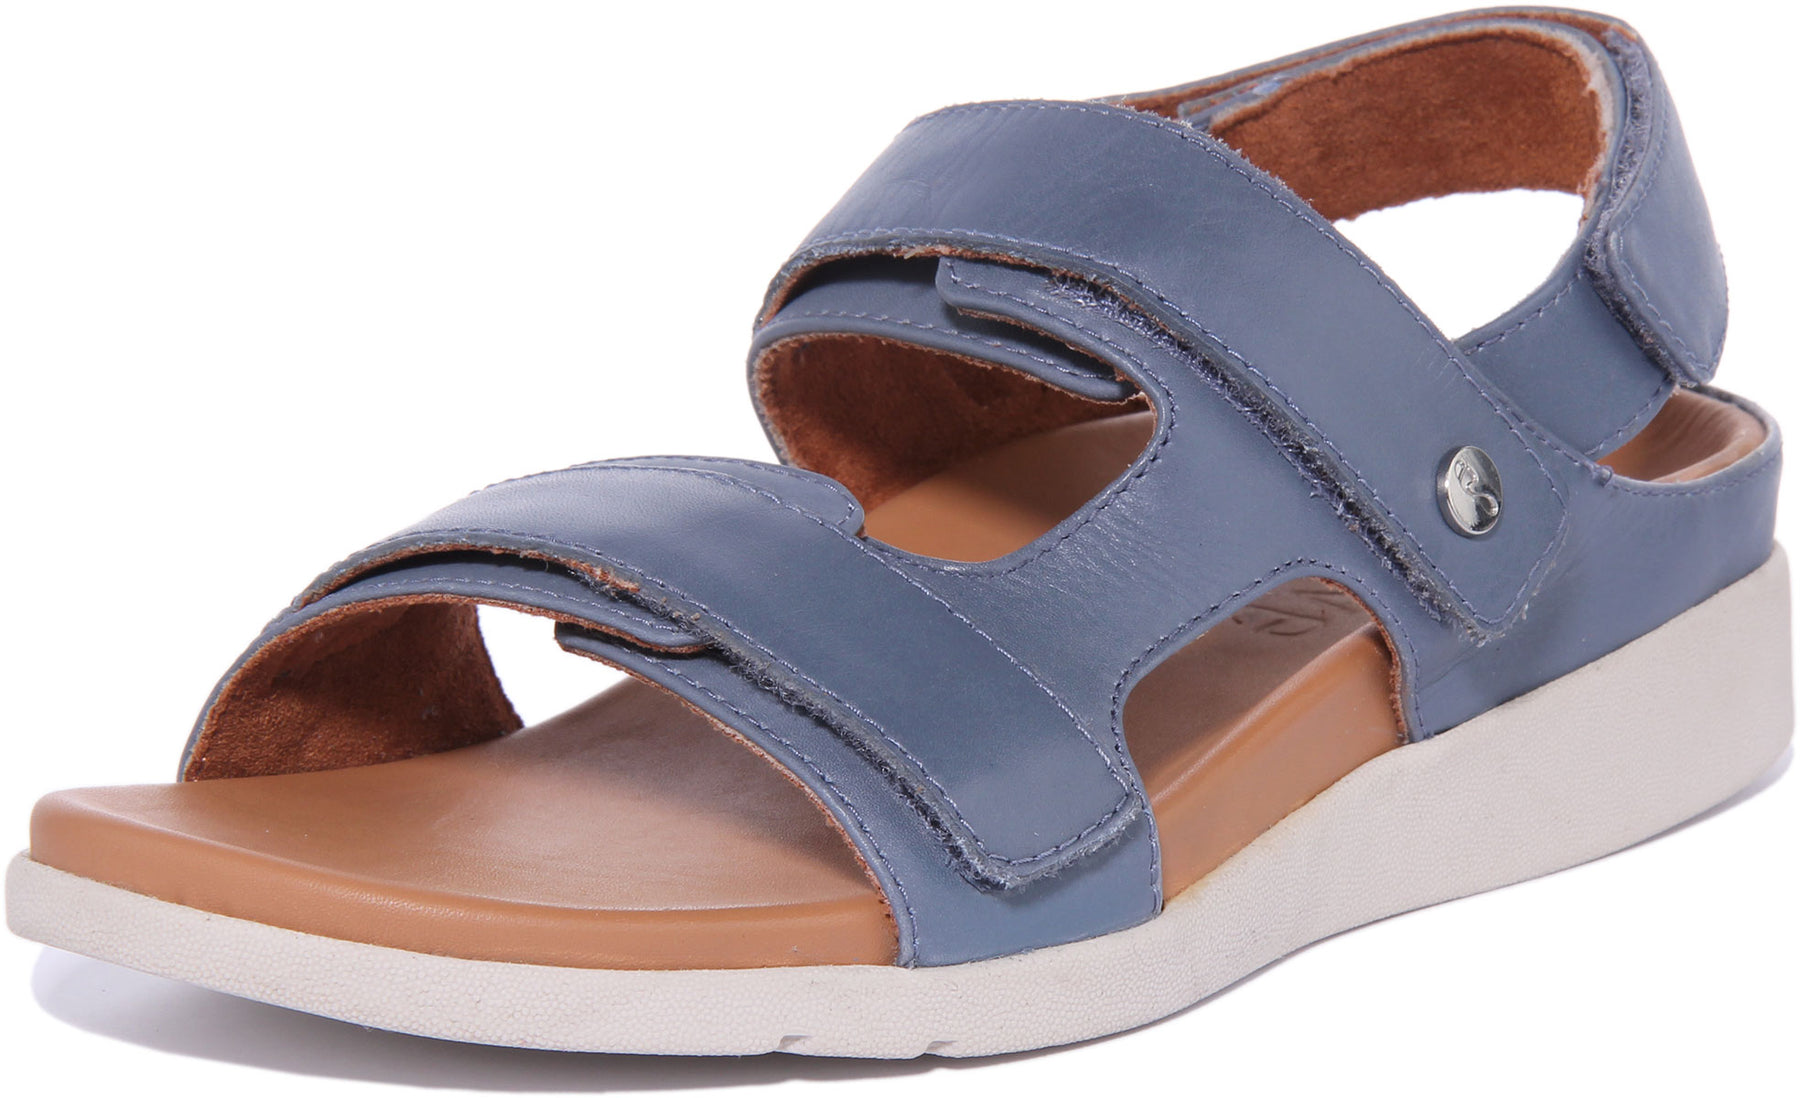 Strive Aruba In Denim For Women | Womens Orthotic Velcro Sandals ...